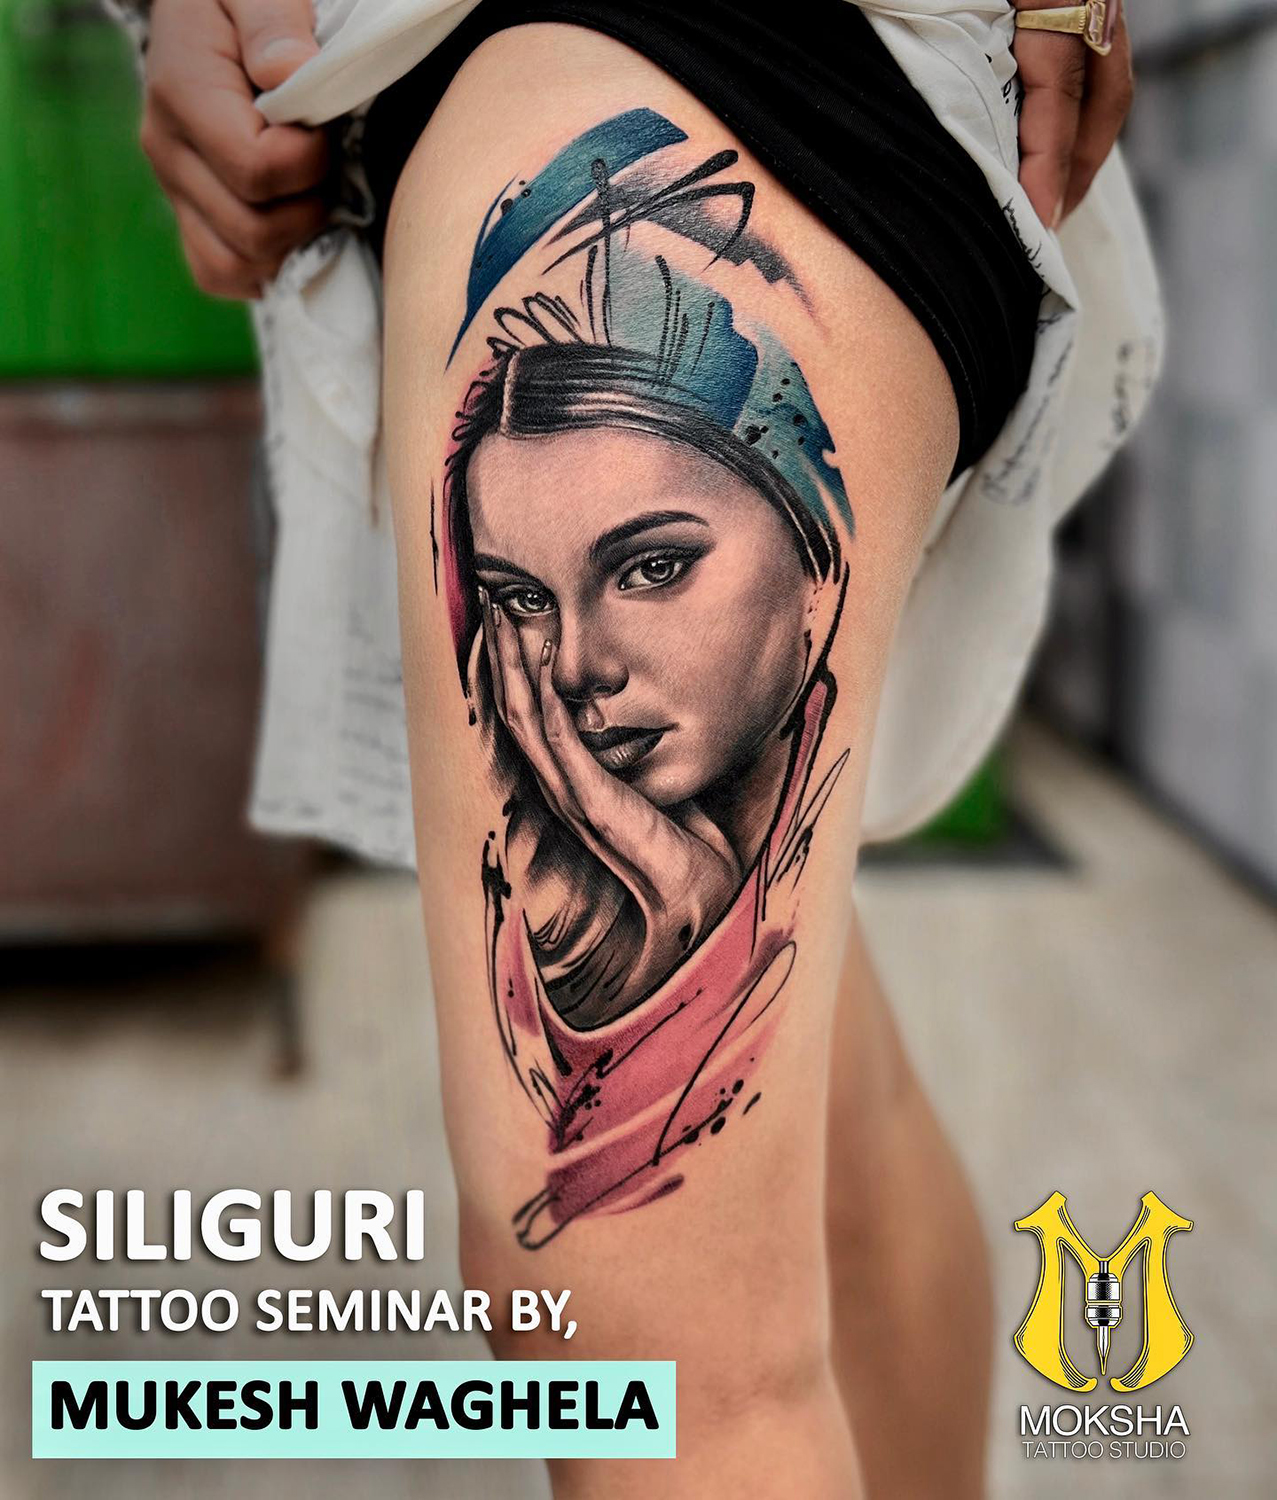 Best Tattoo Studio in Goa - Ultimate Destination for Tattoo in Goa